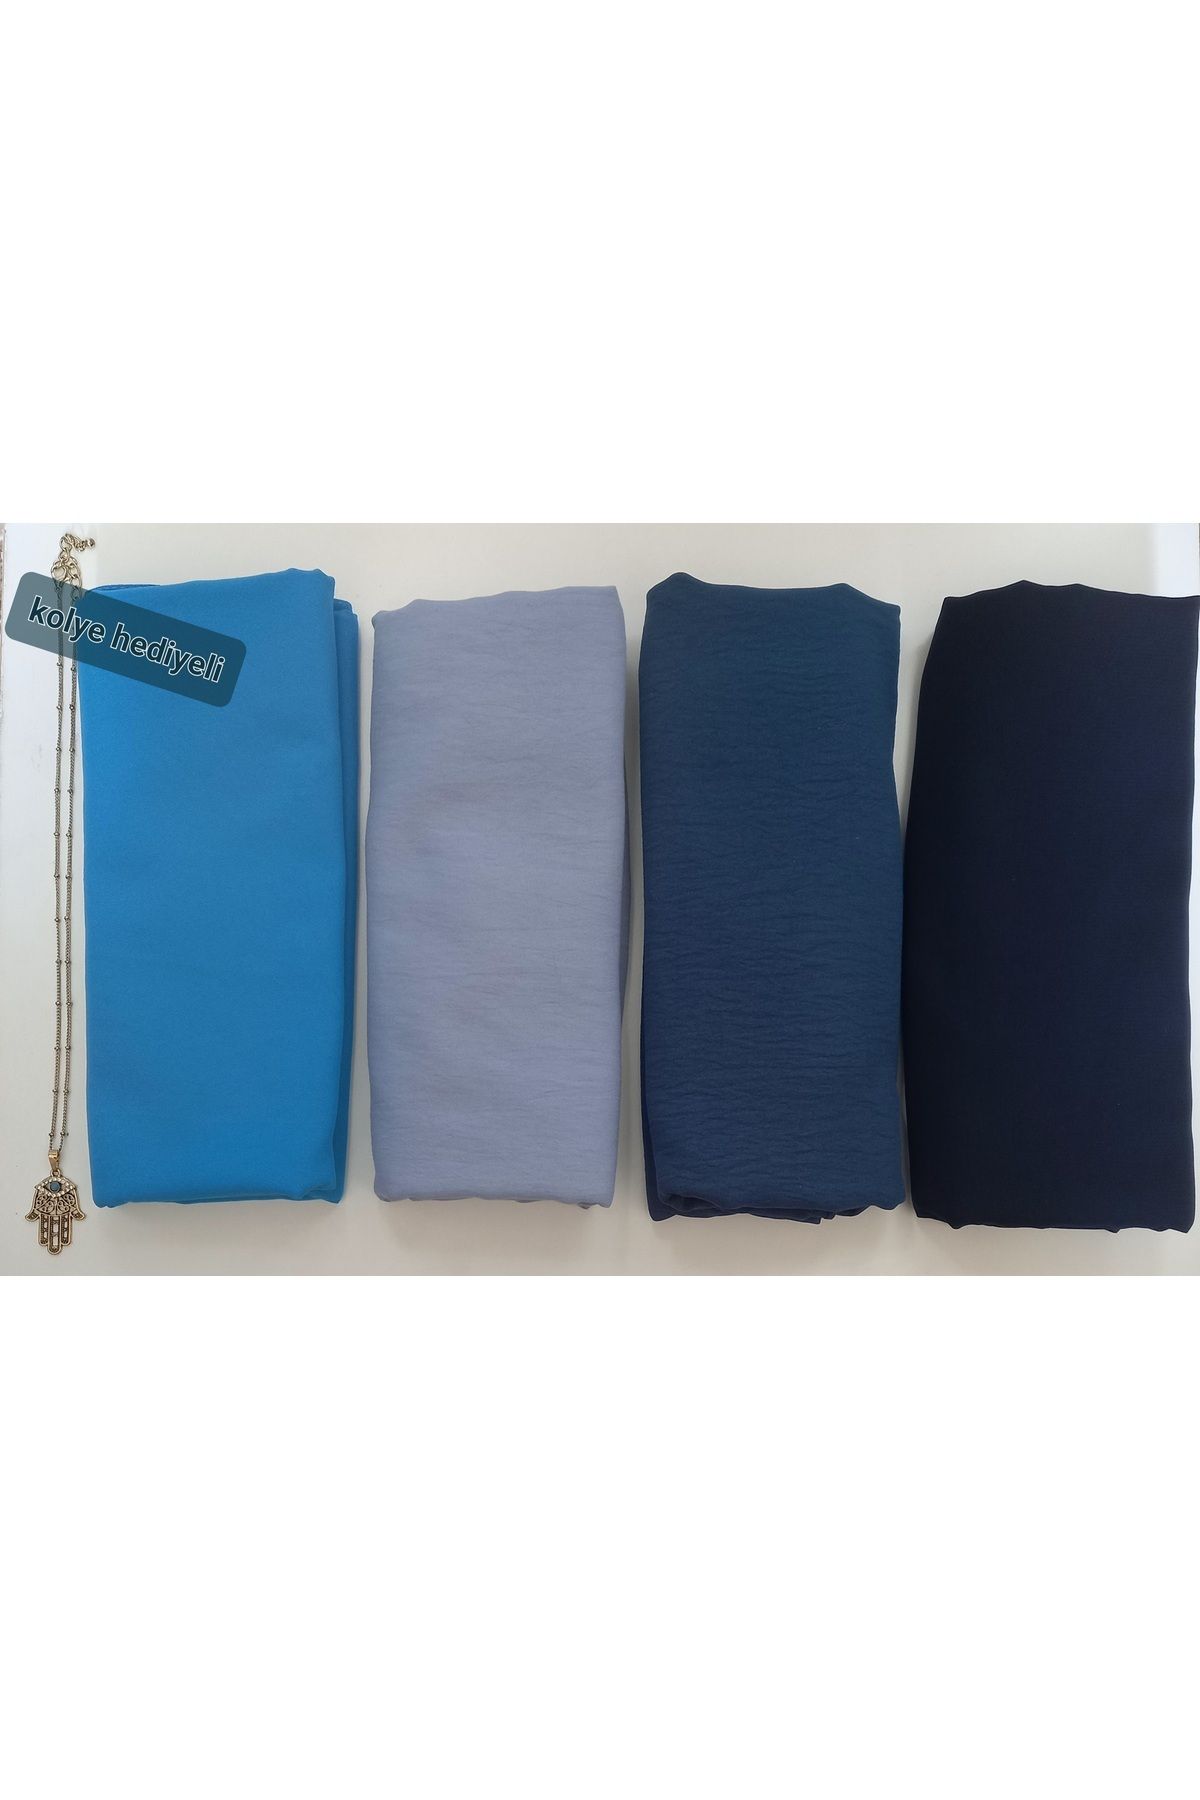 HAR-UM Ticaret Tesettür Kadın Pamuk Cazz Şal Modeli-4'lü Set Mavi,lacivert ,kot Mavisi,açık Mavi